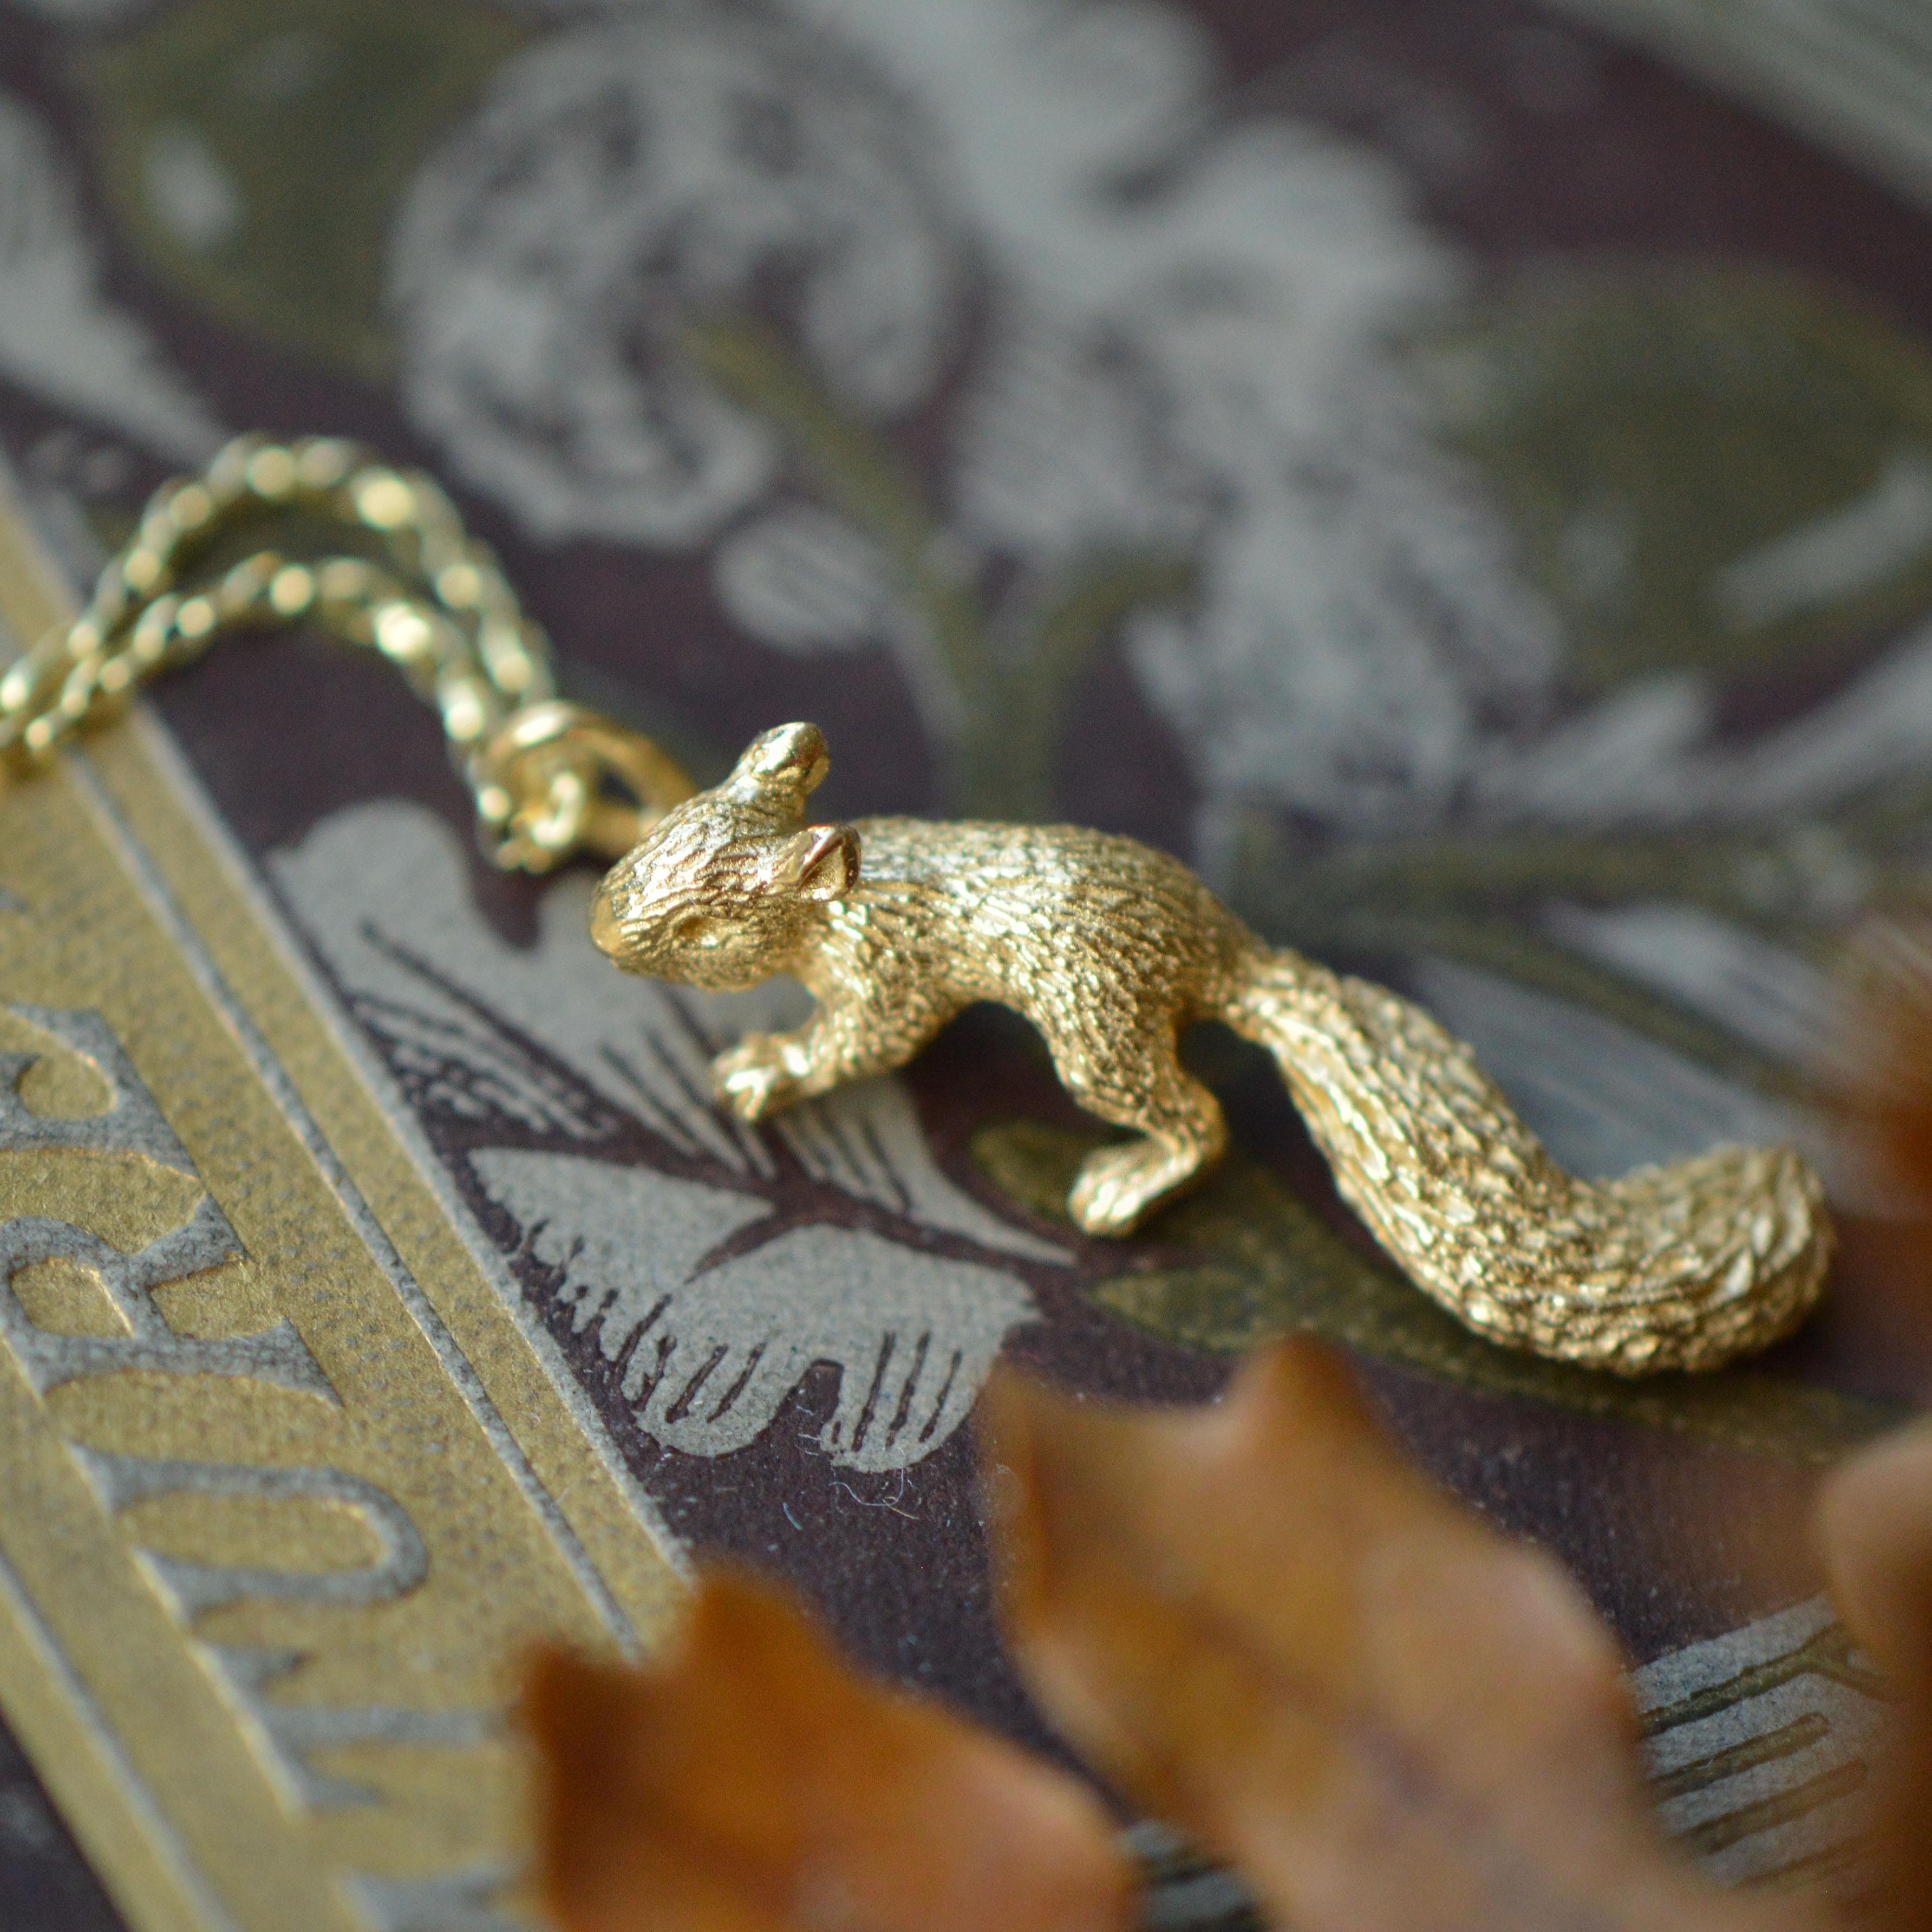 Cet adorable petit pendentif en forme de bébé écureuil grimpant est coulé en or massif 18 carats et fini à la main. Il est créé à partir du design original de Lucy, sculpté à la main. 

Ce pendentif en forme de baleine est fabriqué à Londres, au